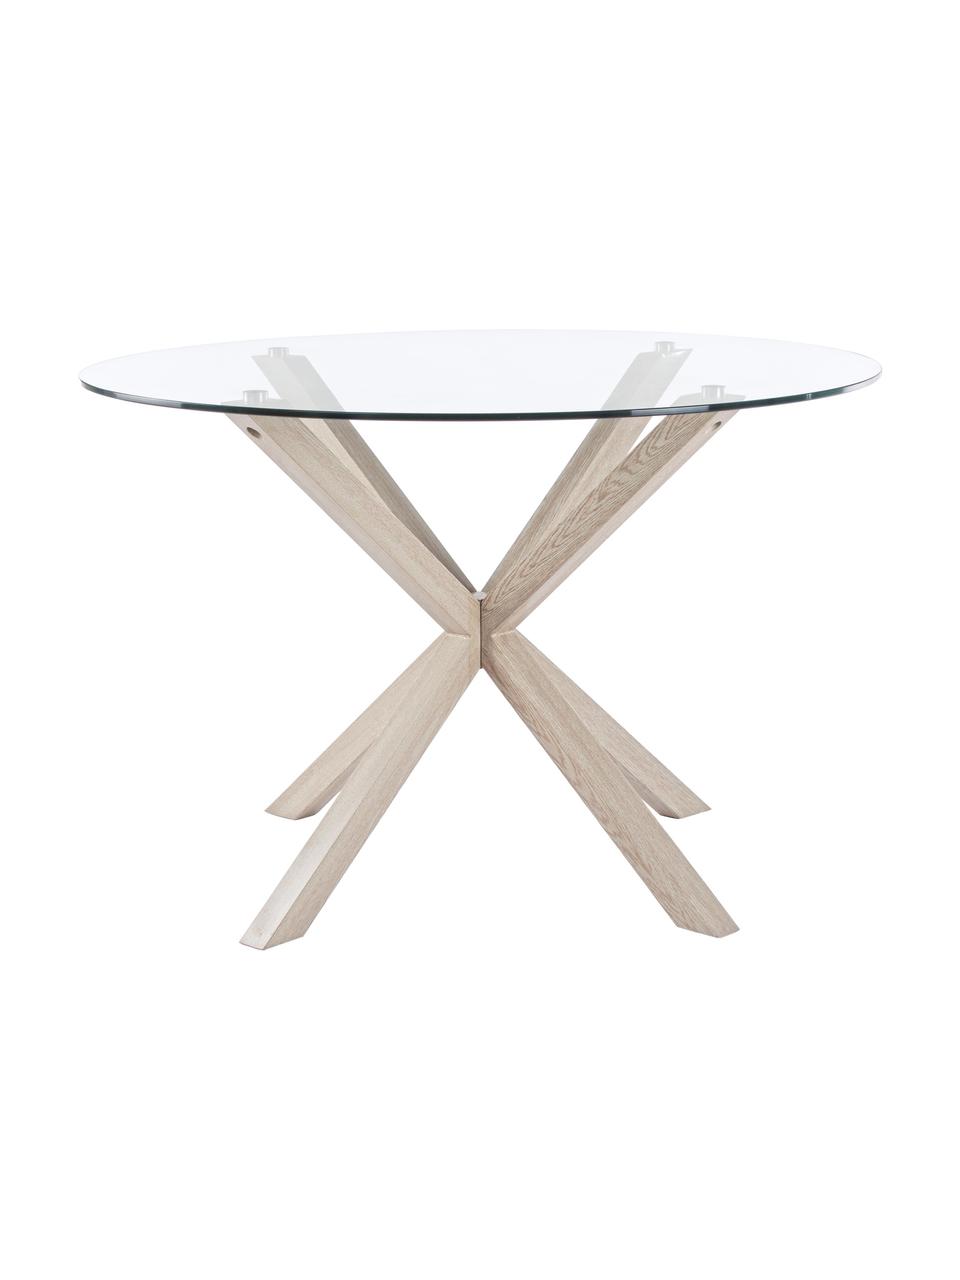 Kulatý jídelní stůl se skleněnou deskou May, Transparentní, dub